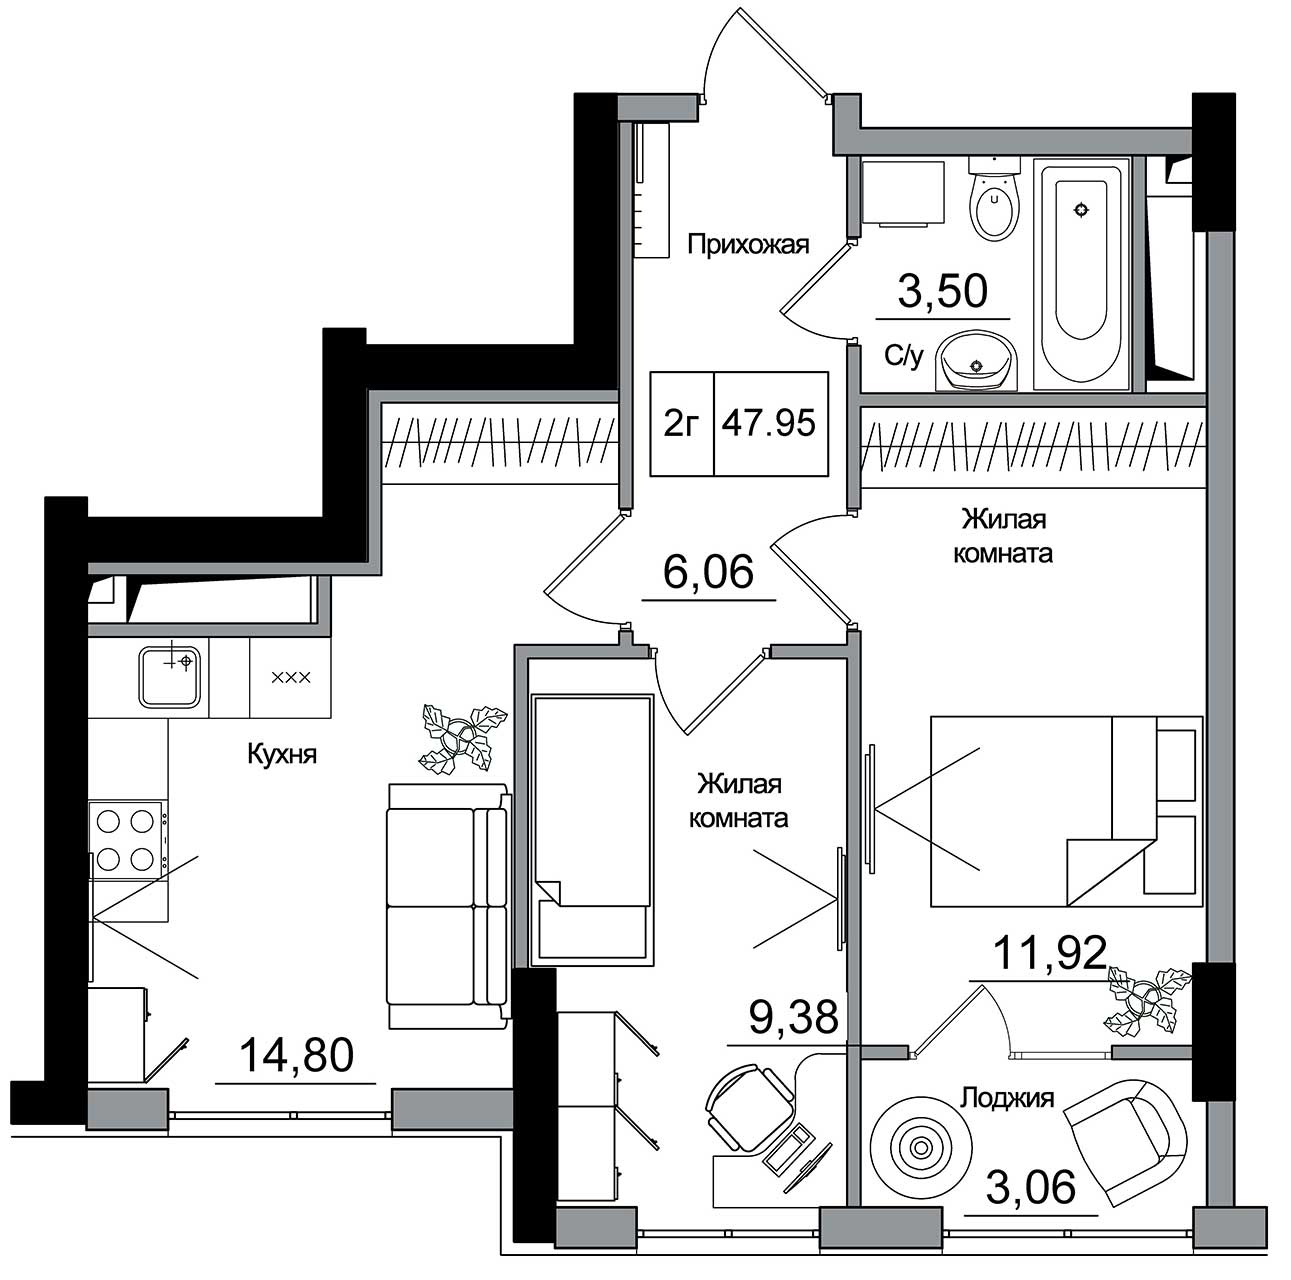 Планування 2-к квартира площею 47.95м2, AB-16-07/00014.